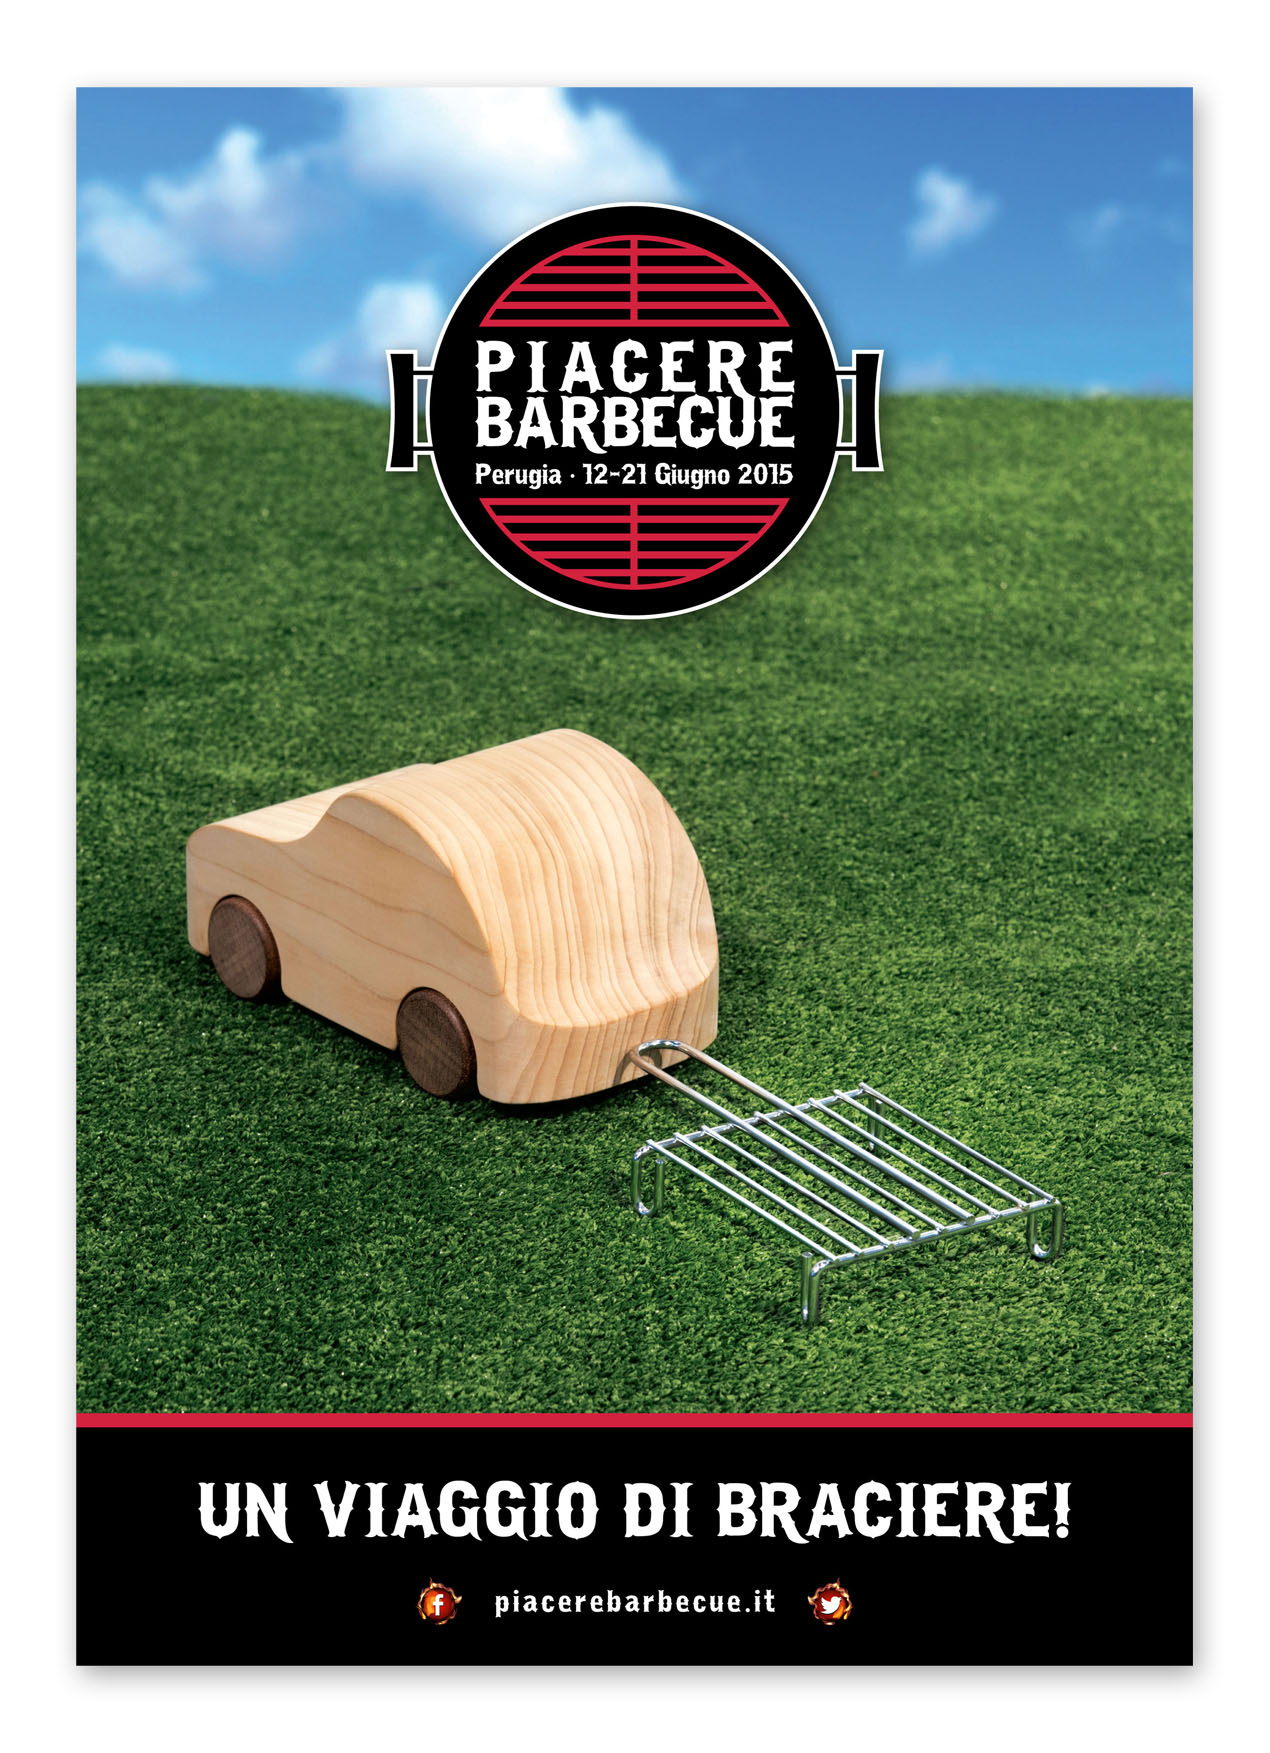  Tutto pronto a Perugia per la terza edizione di Piacere Barbecue dal 12 al 21 Giugno